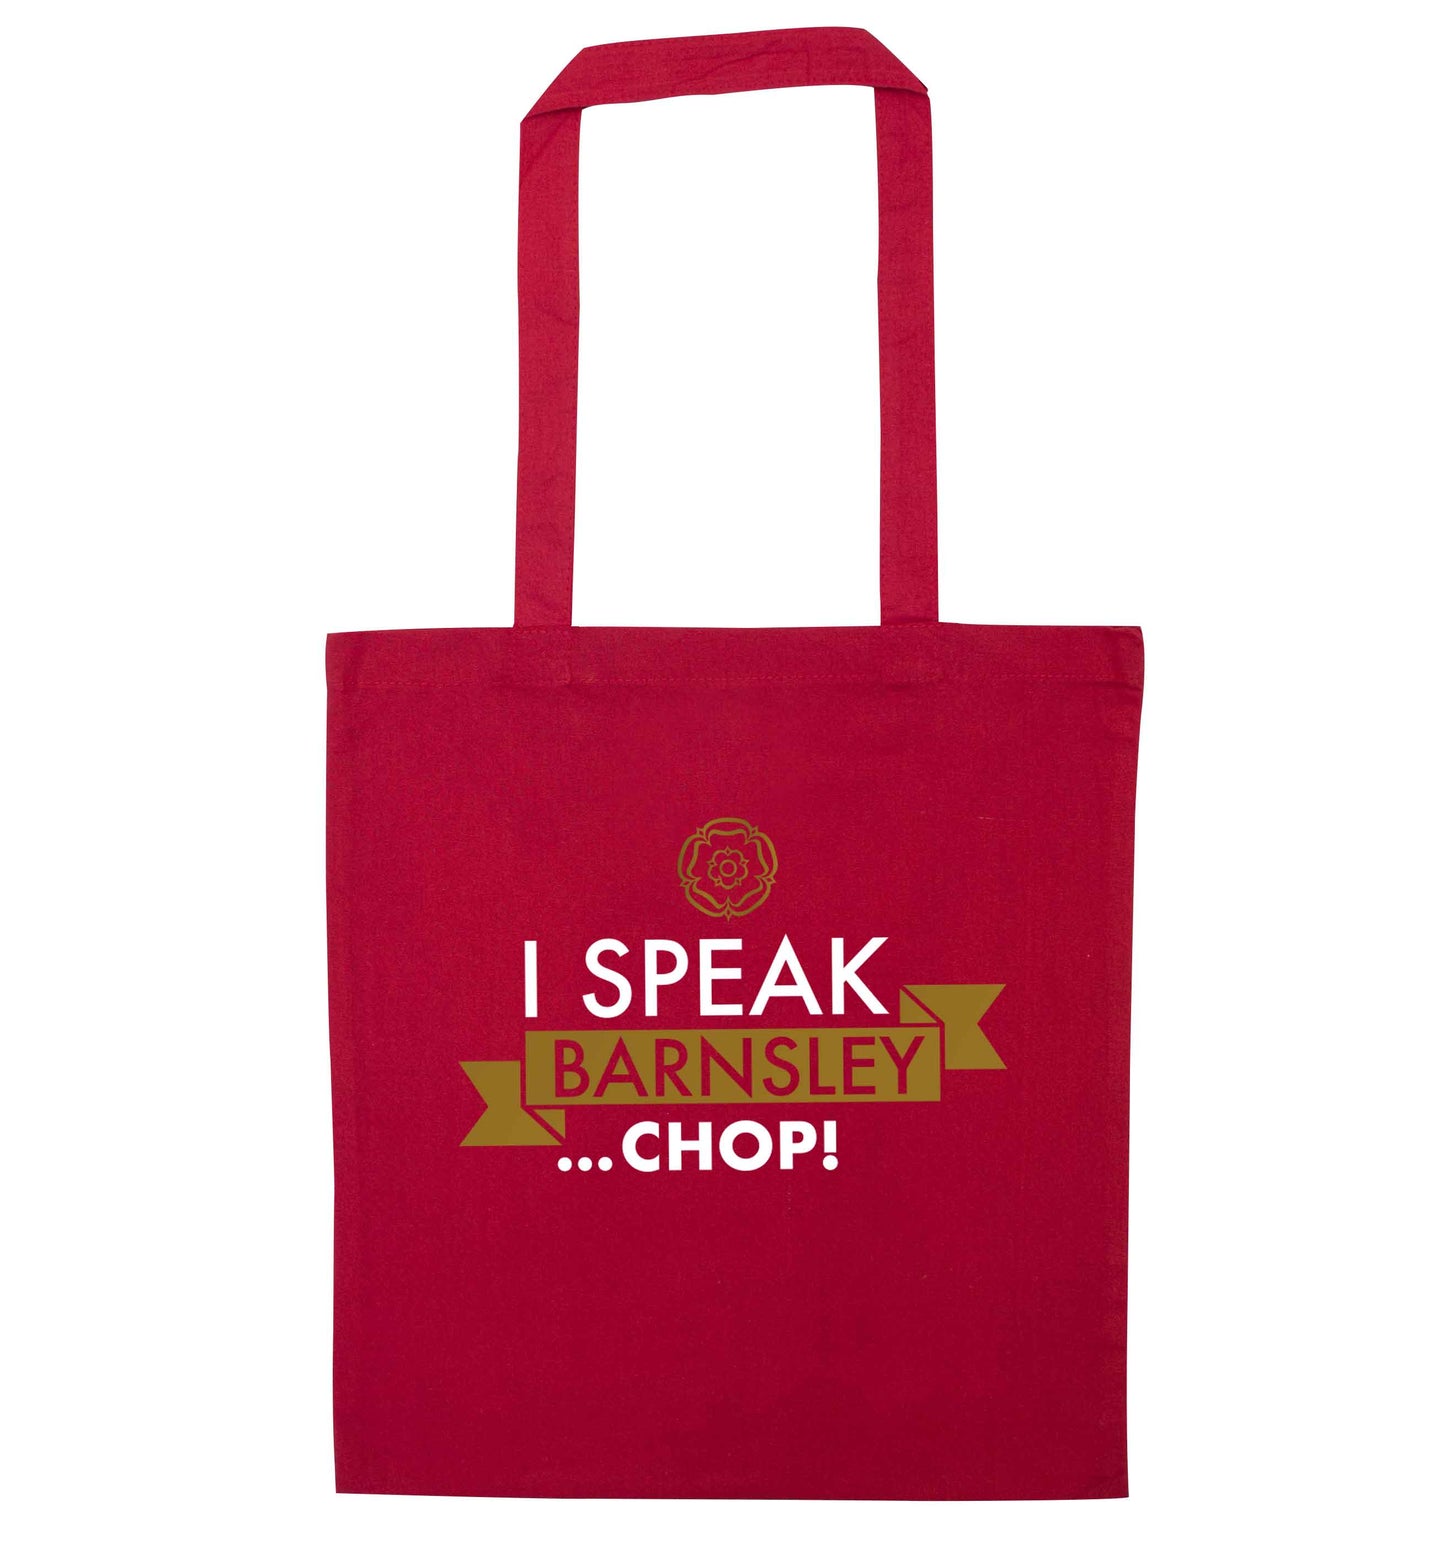 I speak Barnsley...chop! red tote bag